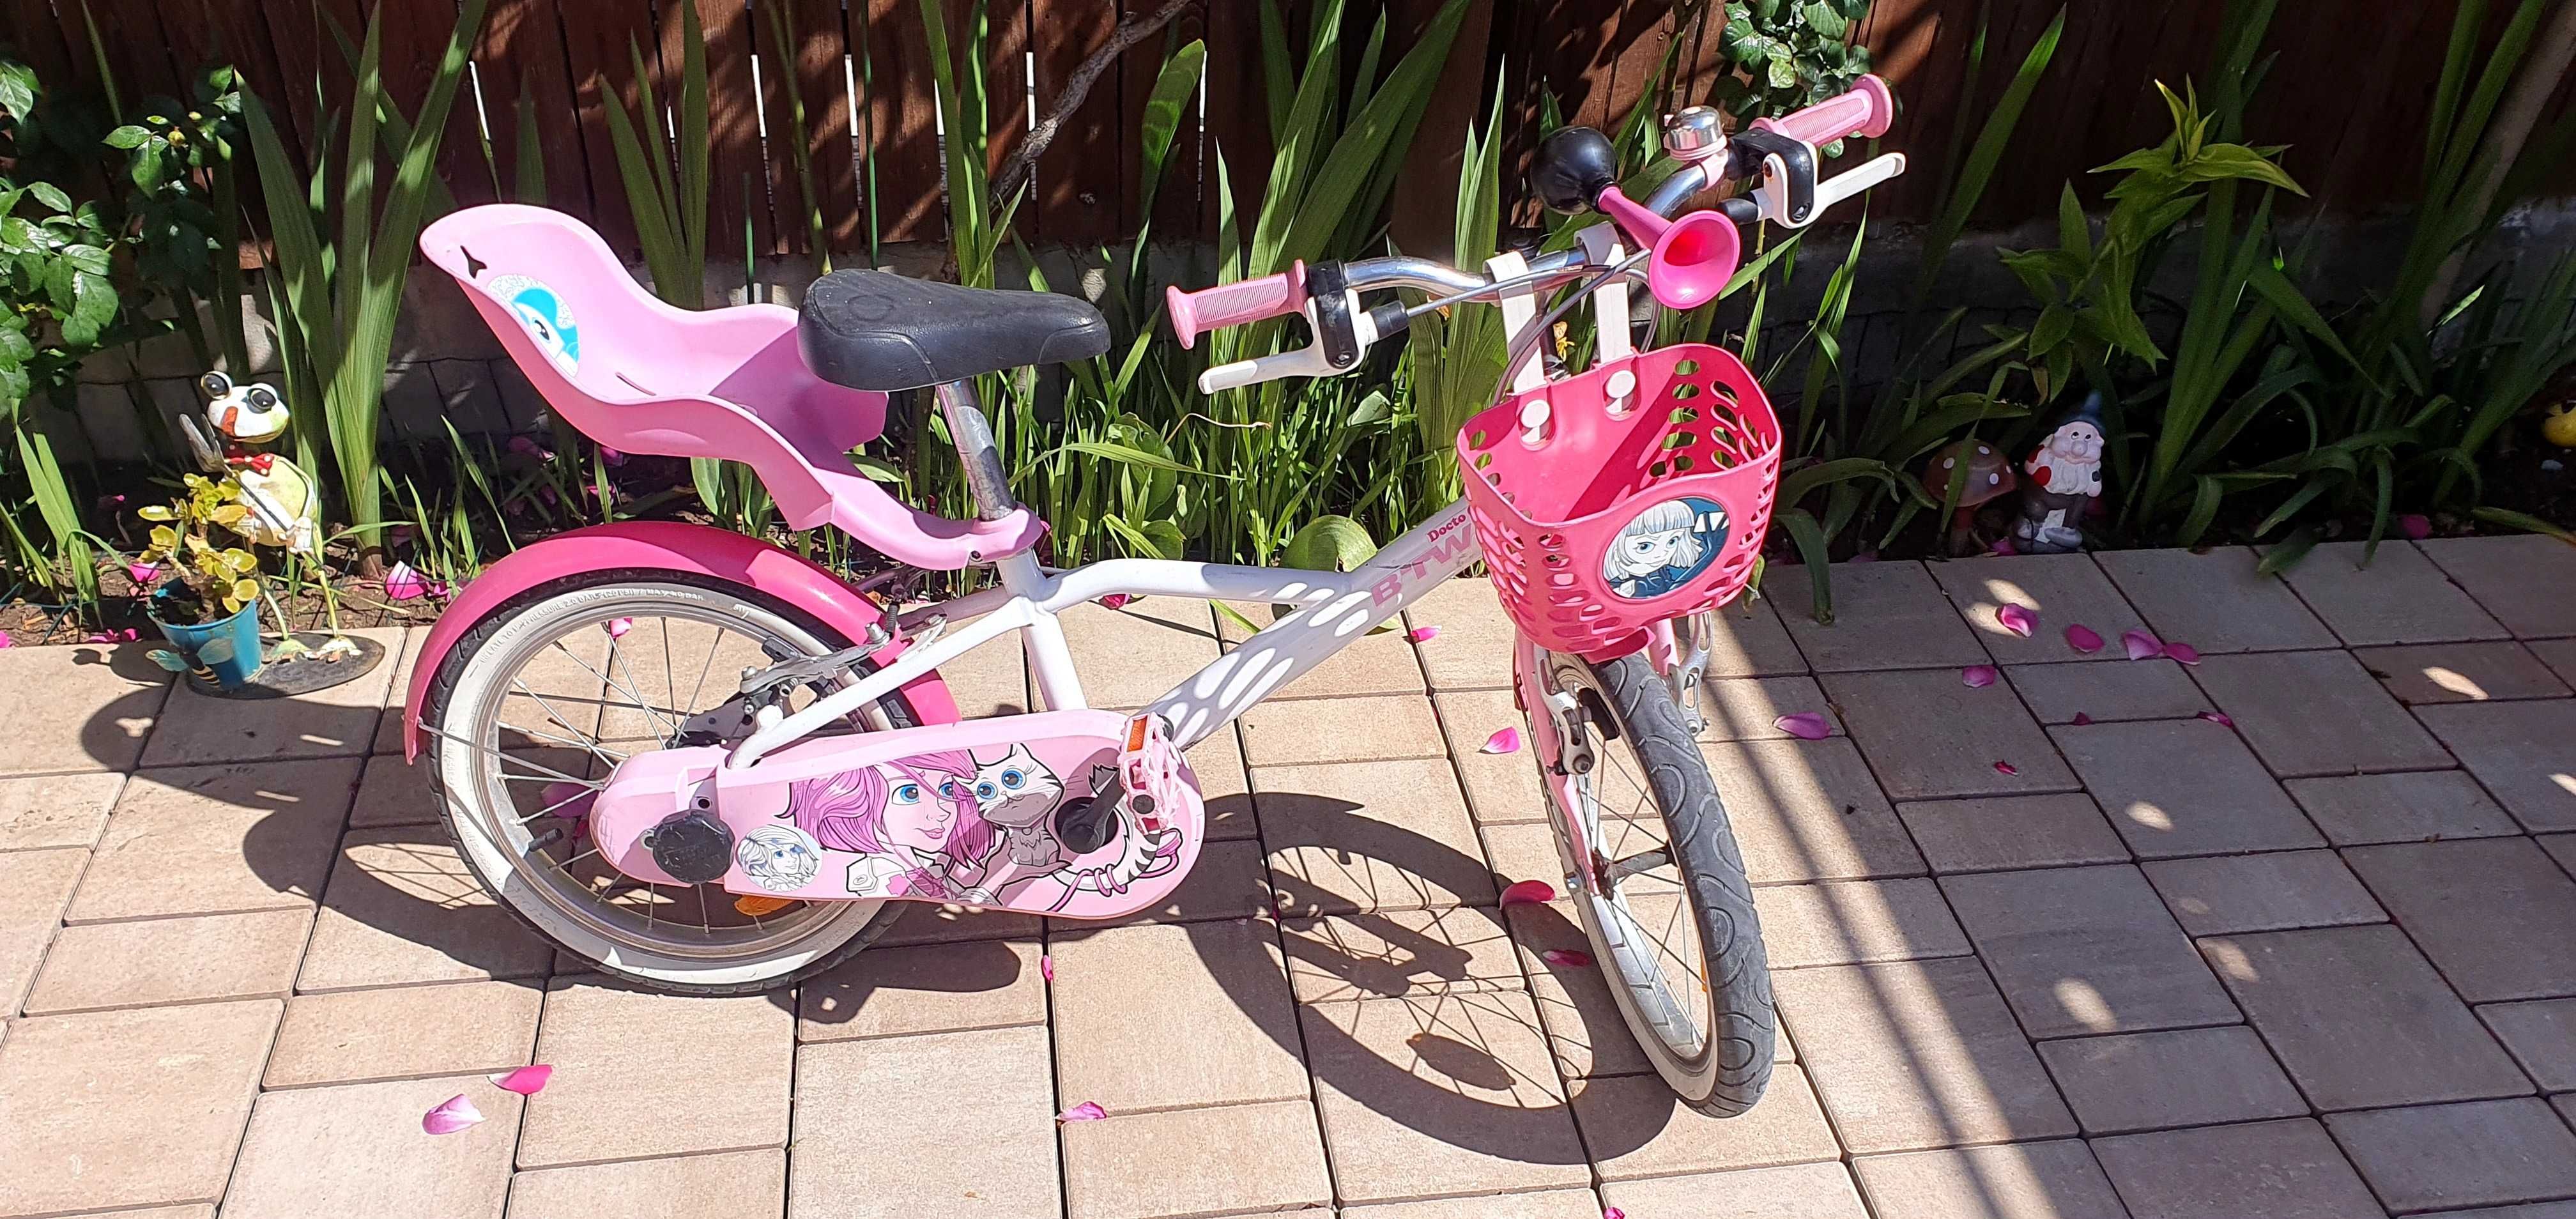 Bicicleta copii fetite